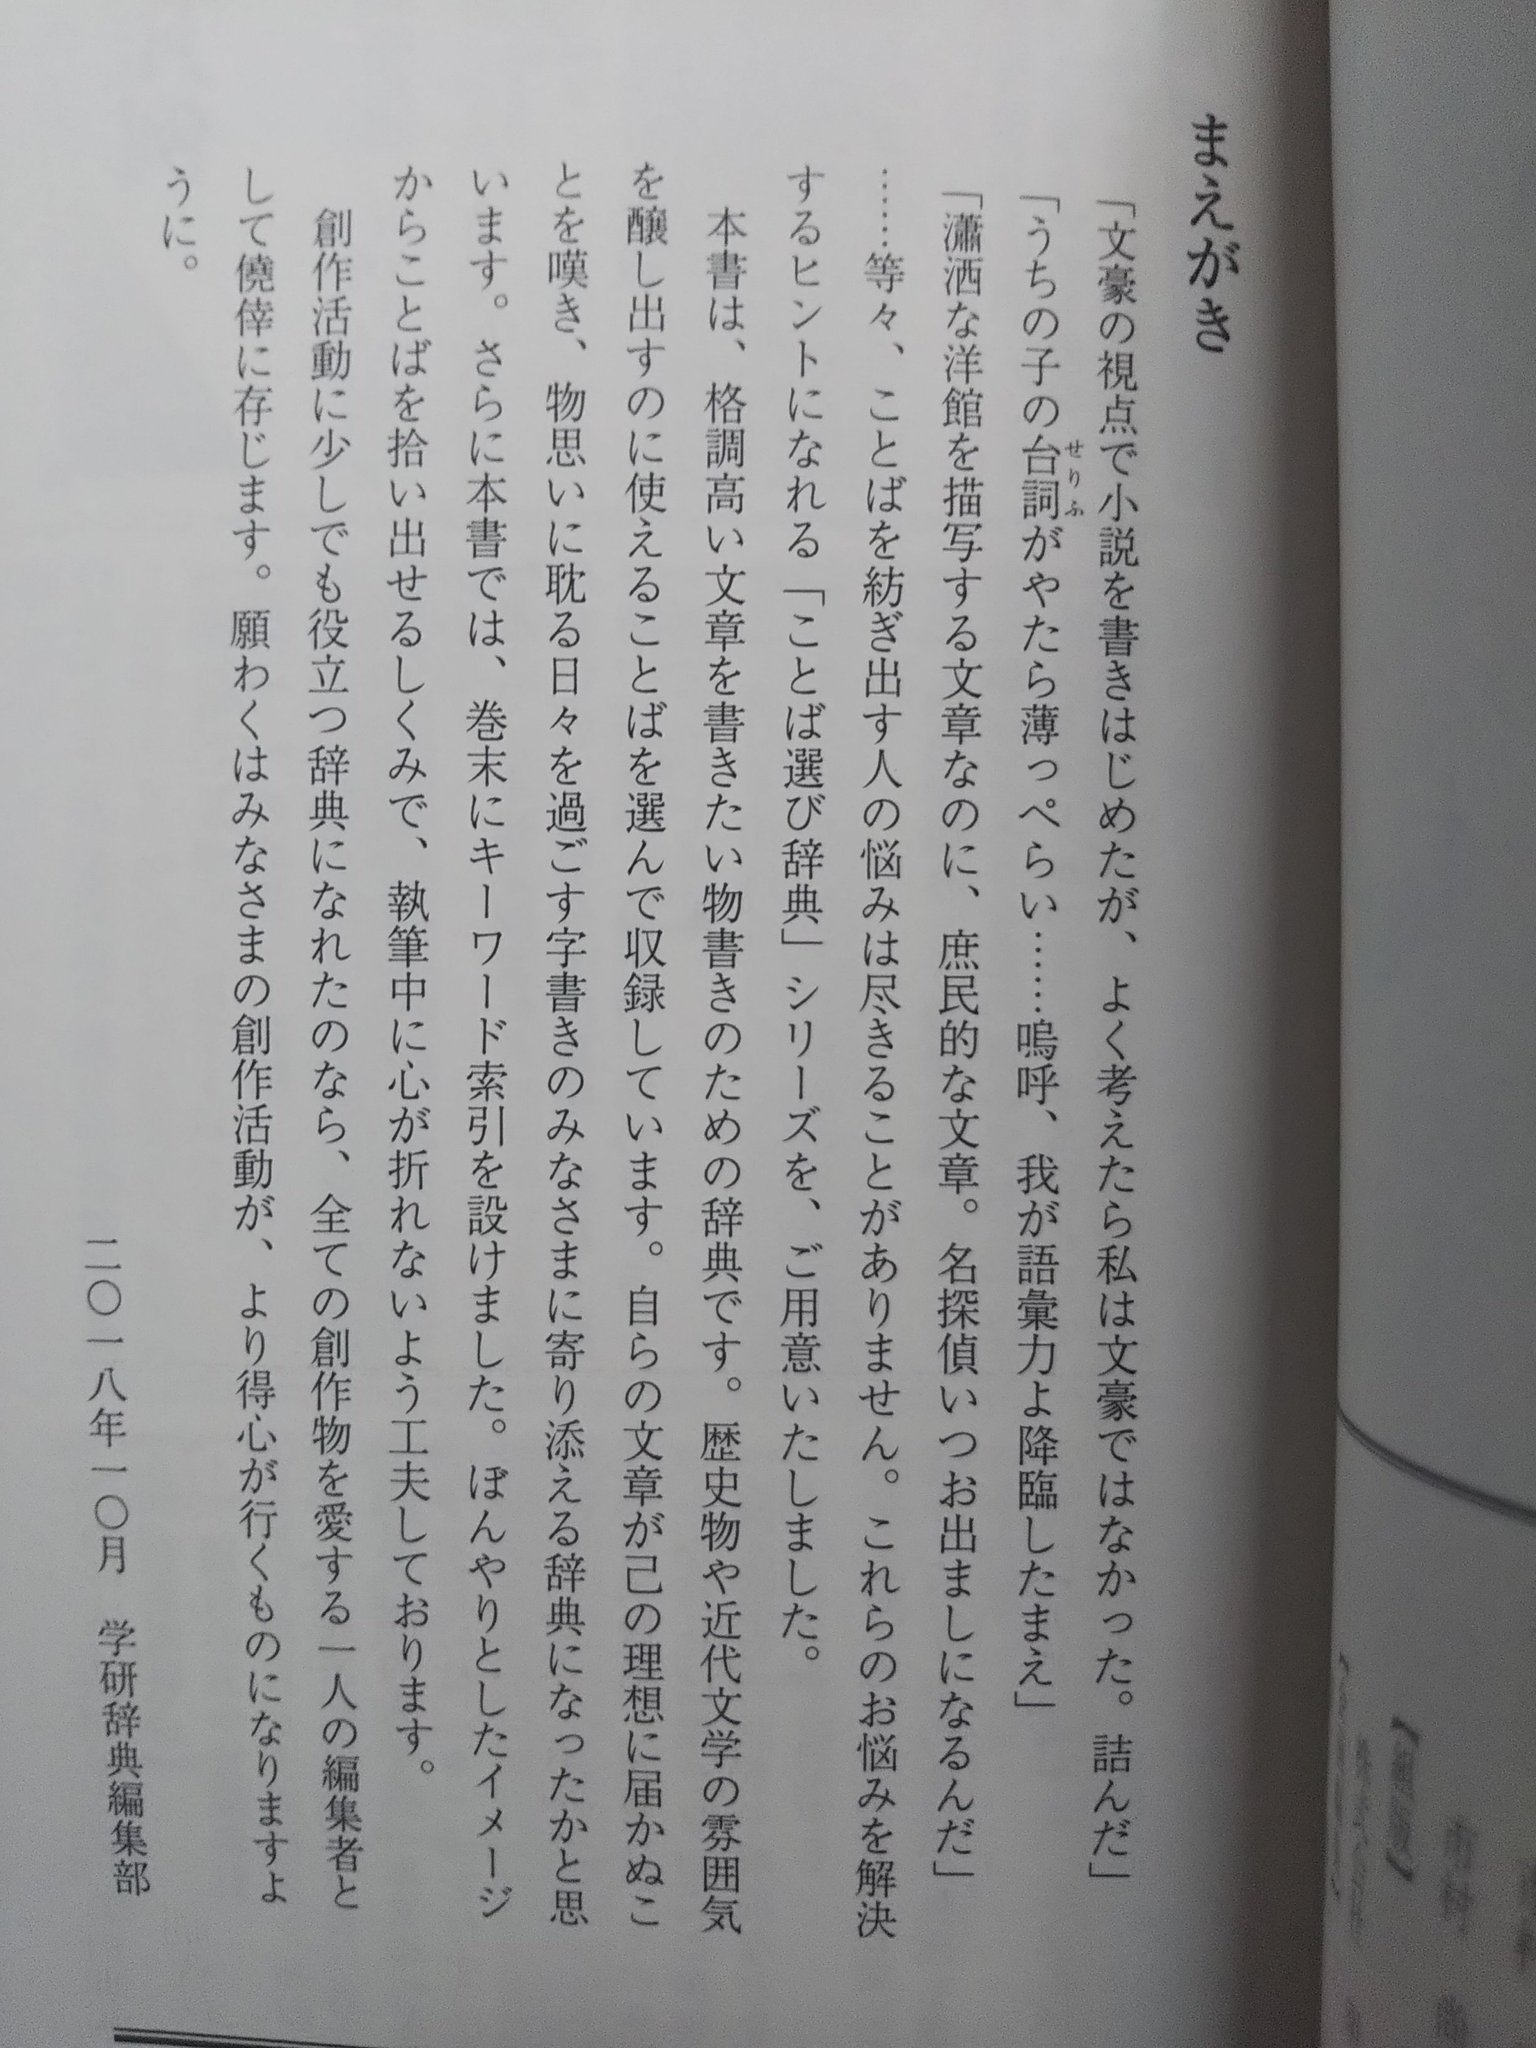 櫂 学研の 美しい日本語選び辞典 まえがきの時点でもう買って正解だった感がある 税別630円